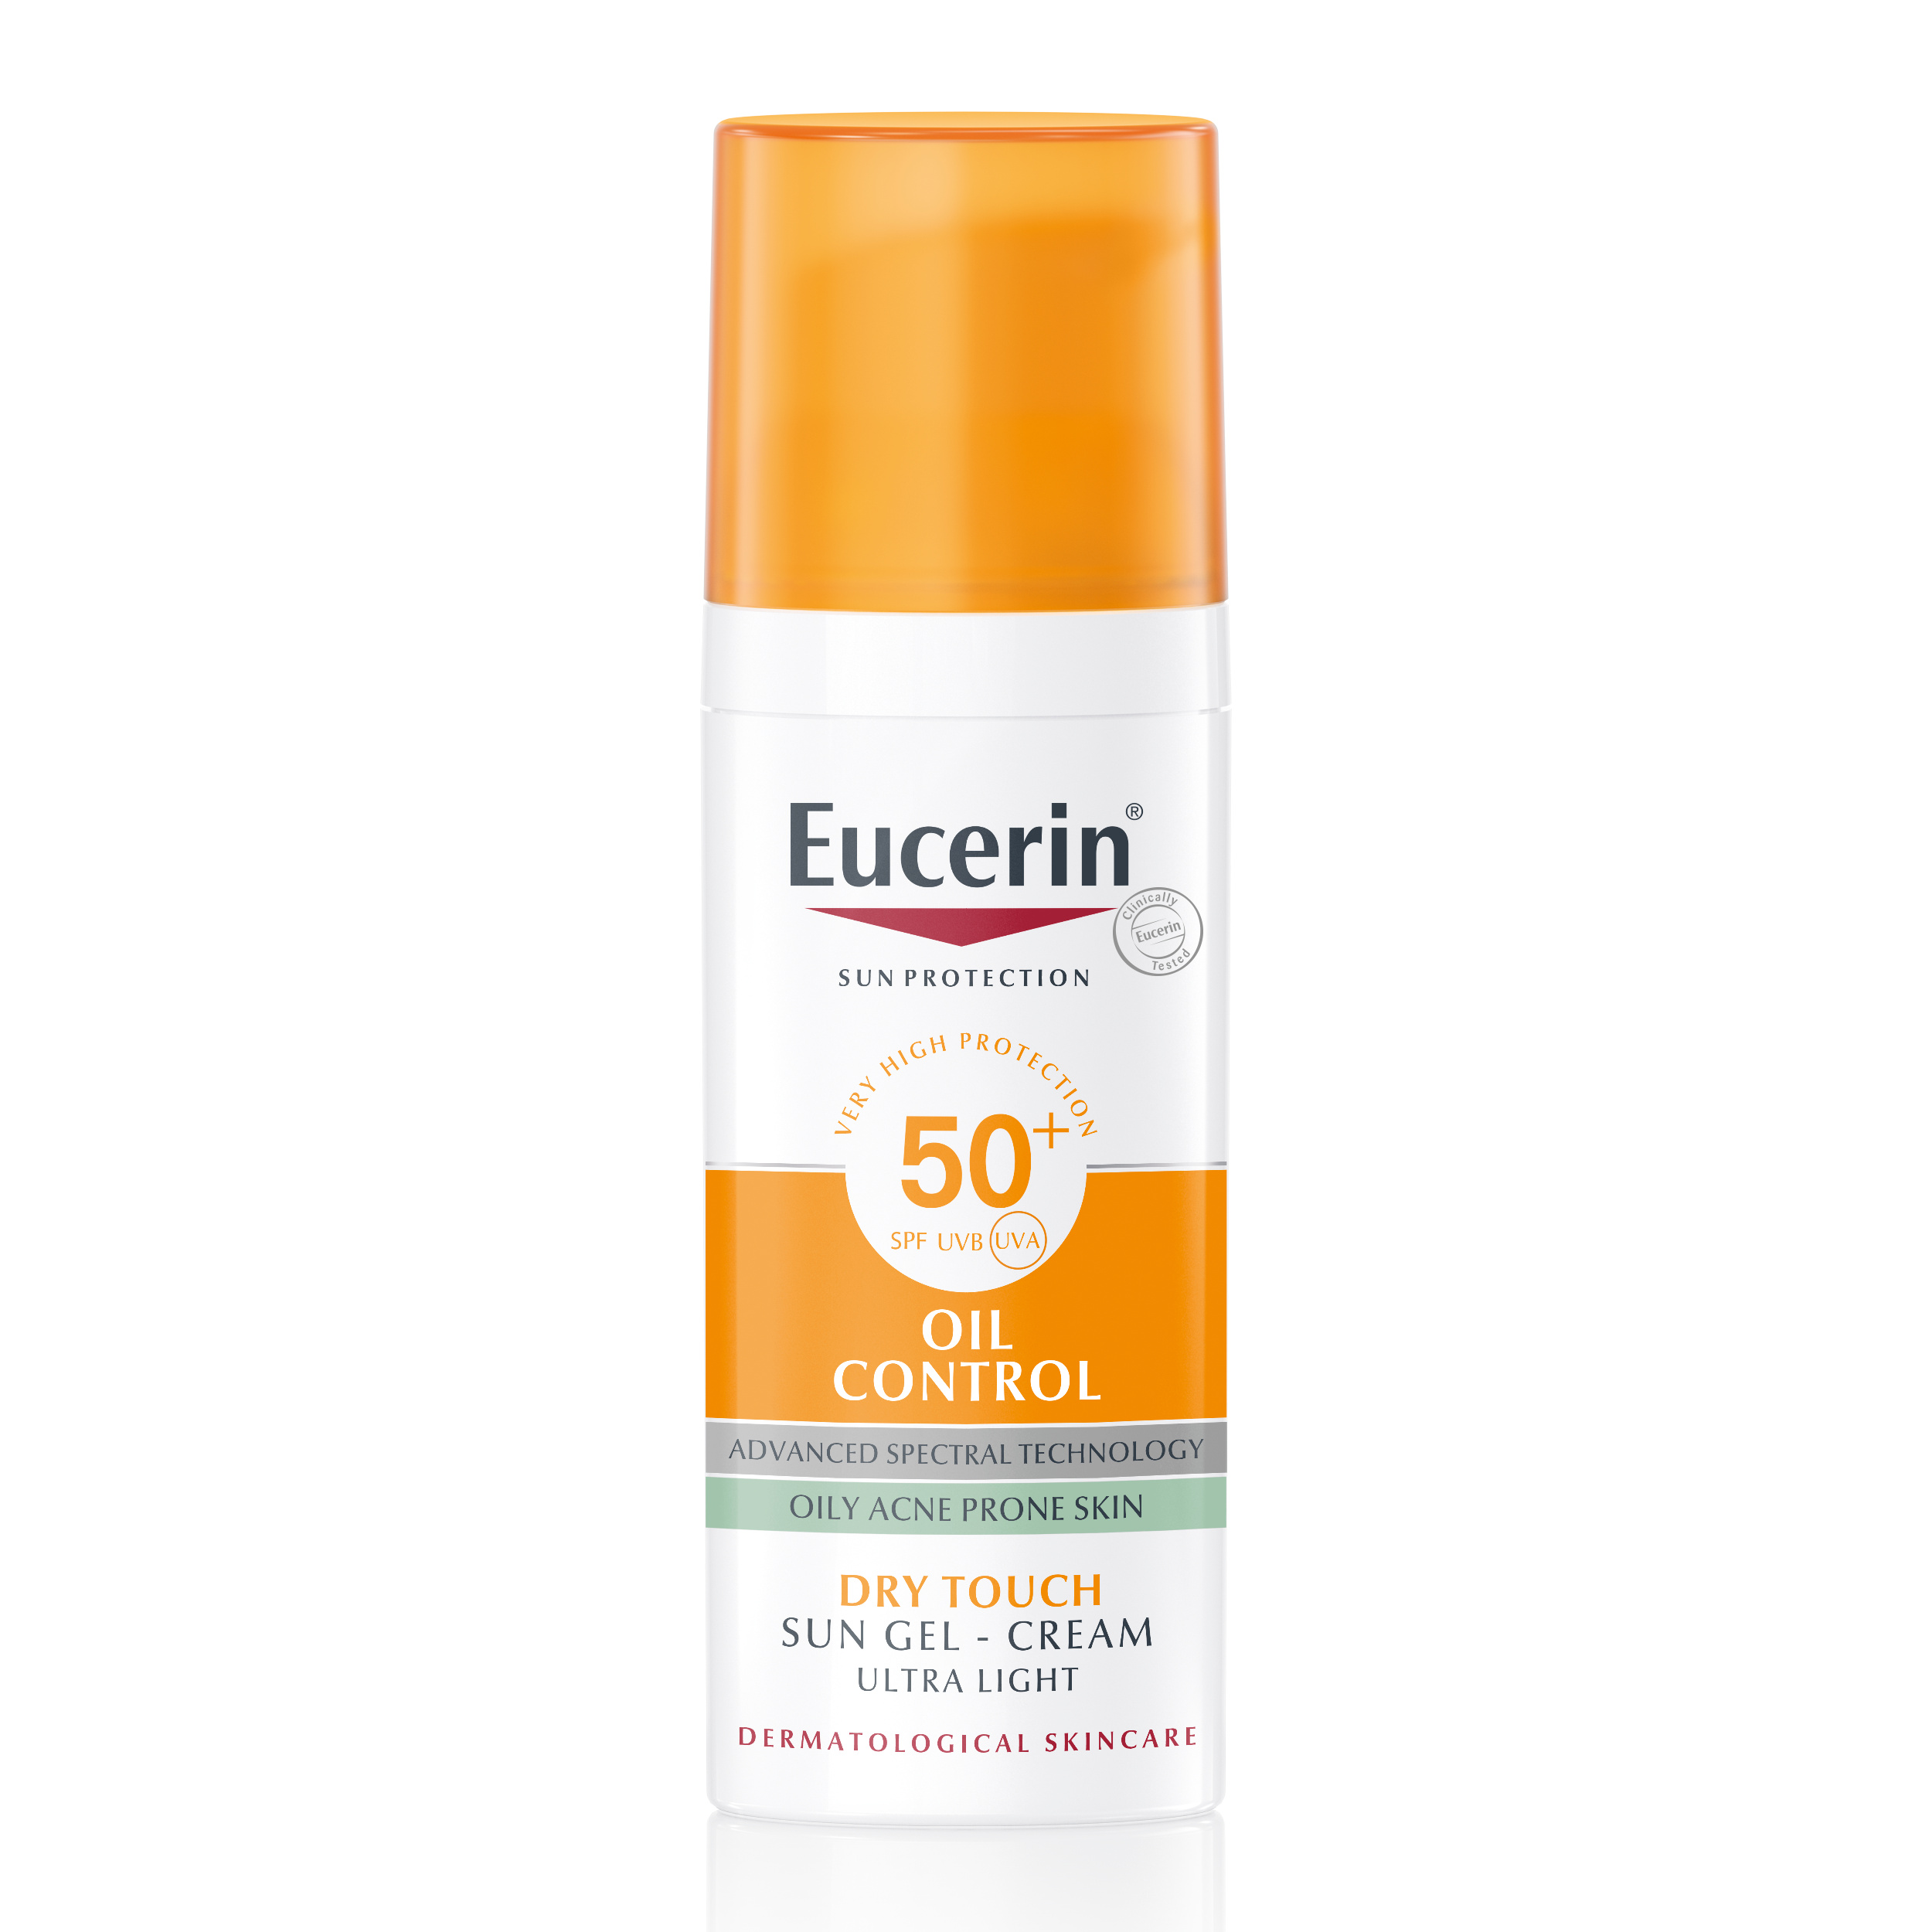 Eucerin Oil Control Sun Gel - Cream SPF 50+